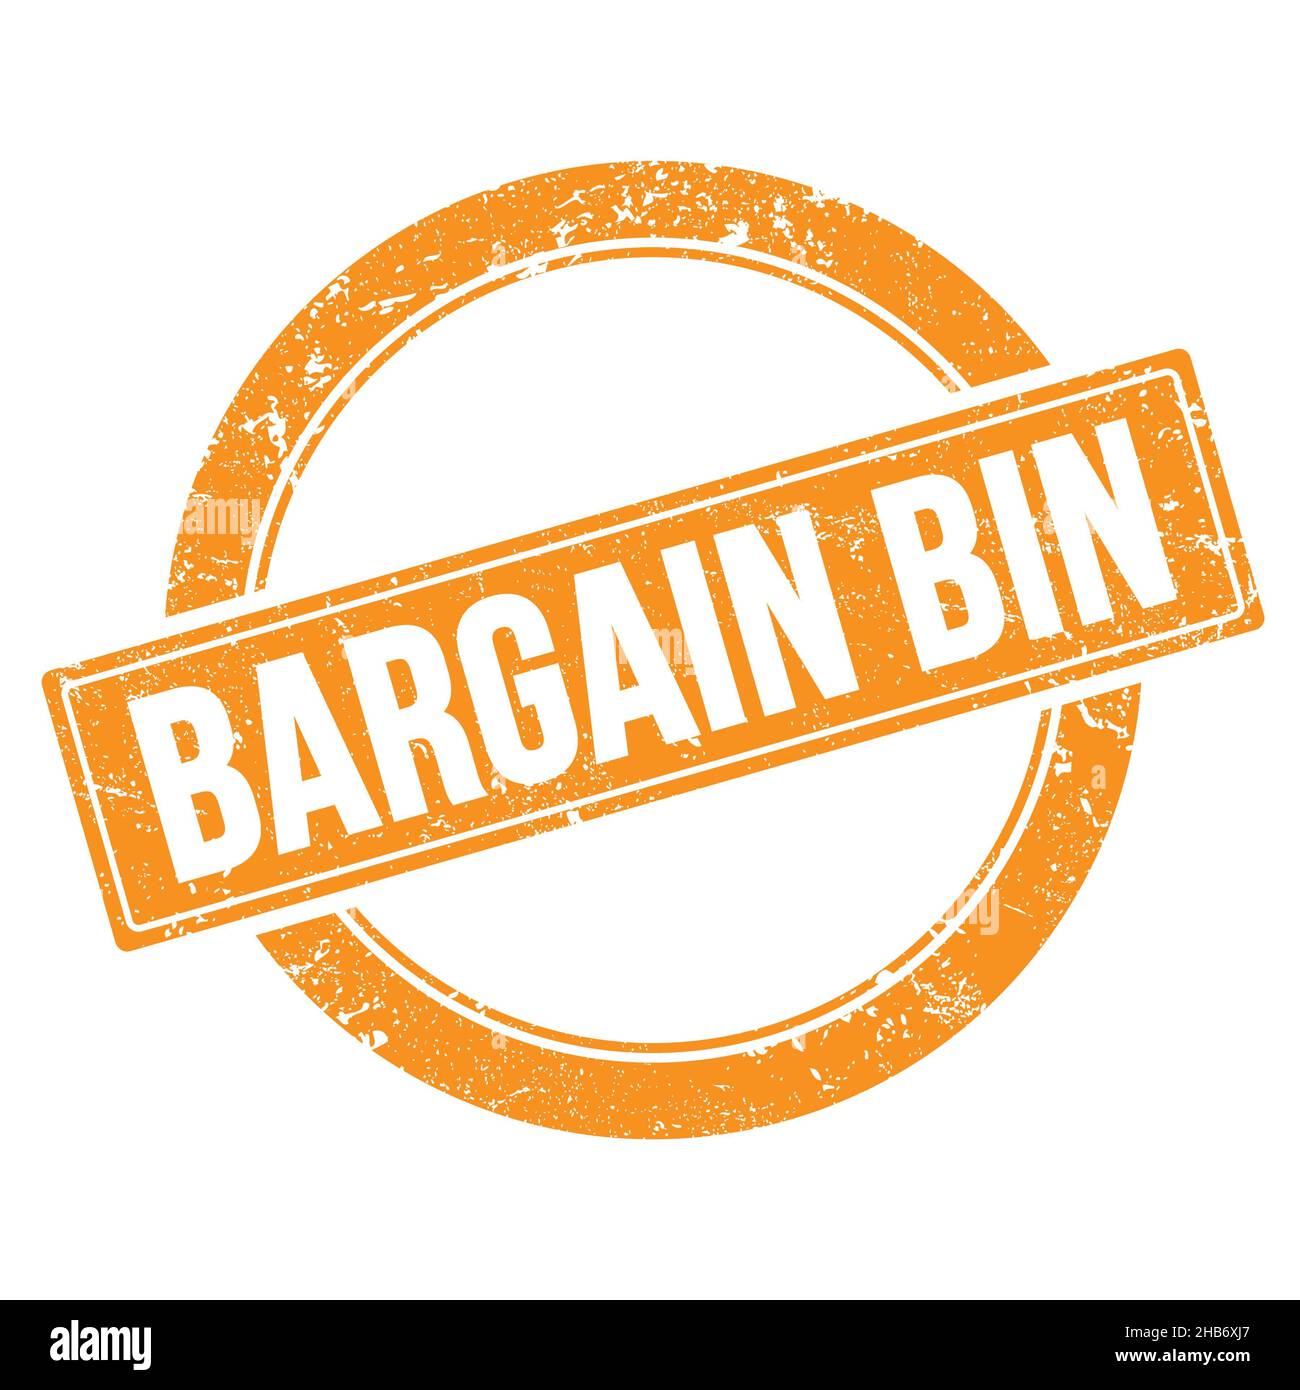 BARGAIN BIN text on orange grungy round vintage stamp. Stock Photo